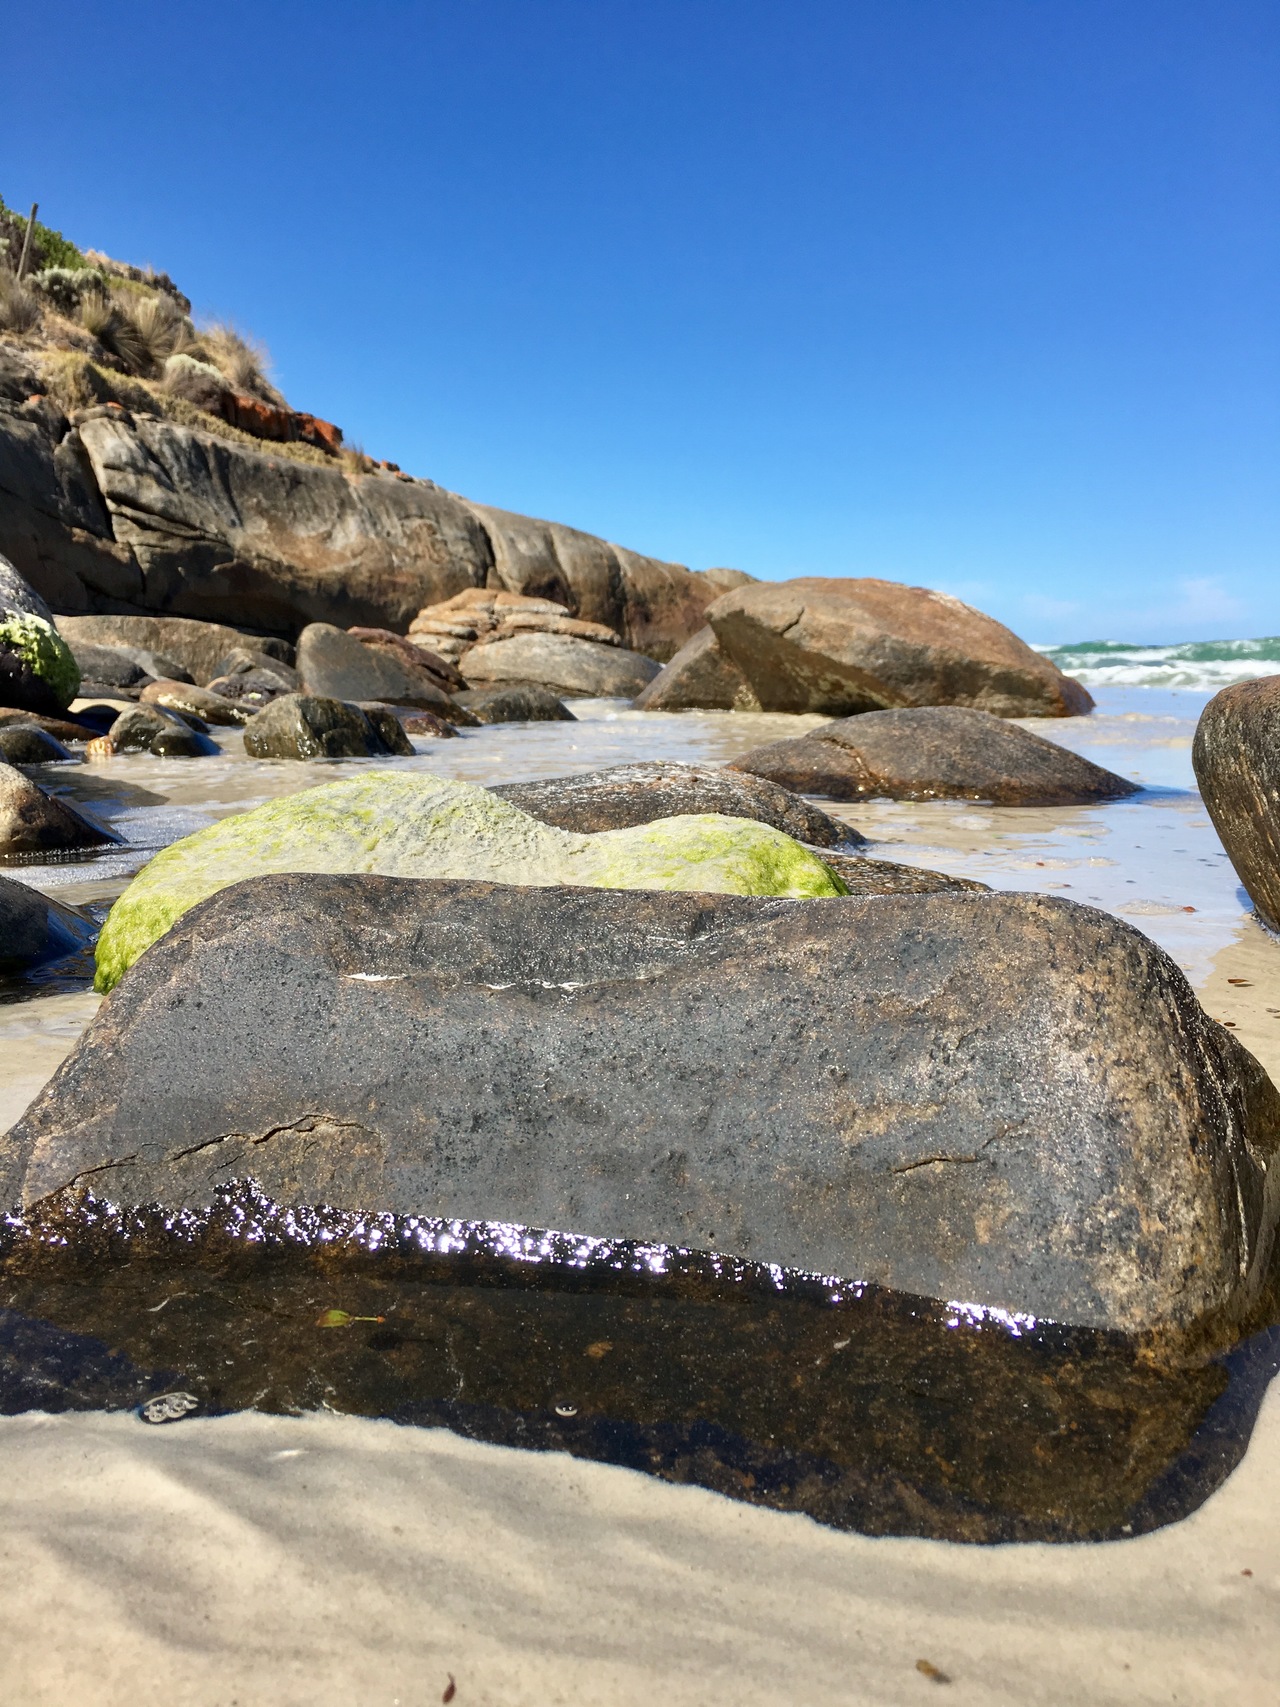 Foap.com: Green algae on boulders in ocean south Australia low tide ...